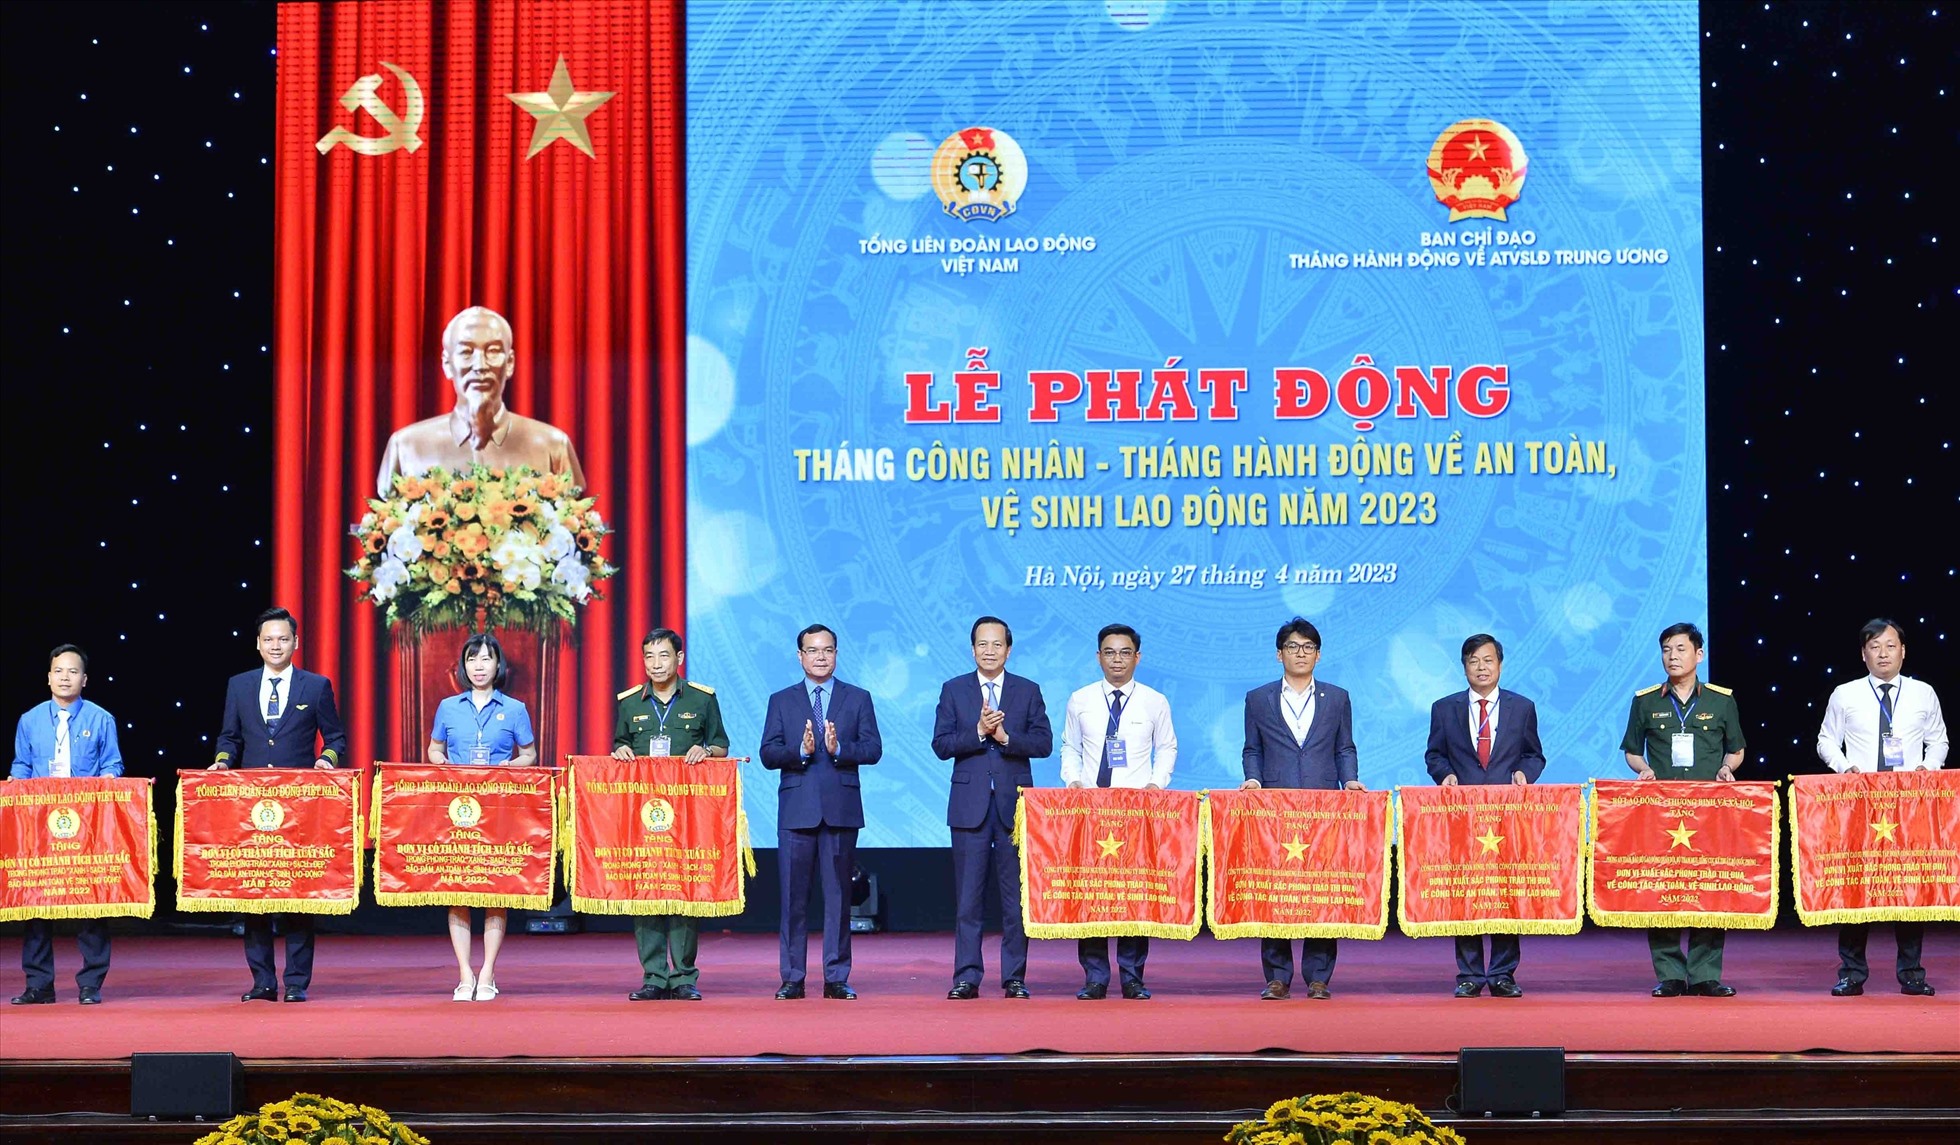 5 tập thể được nhận Cờ thi đua của Bộ LĐTBXH và 5 tập thể được nhận Cờ thi đua của Tổng LĐLĐ Việt Nam.